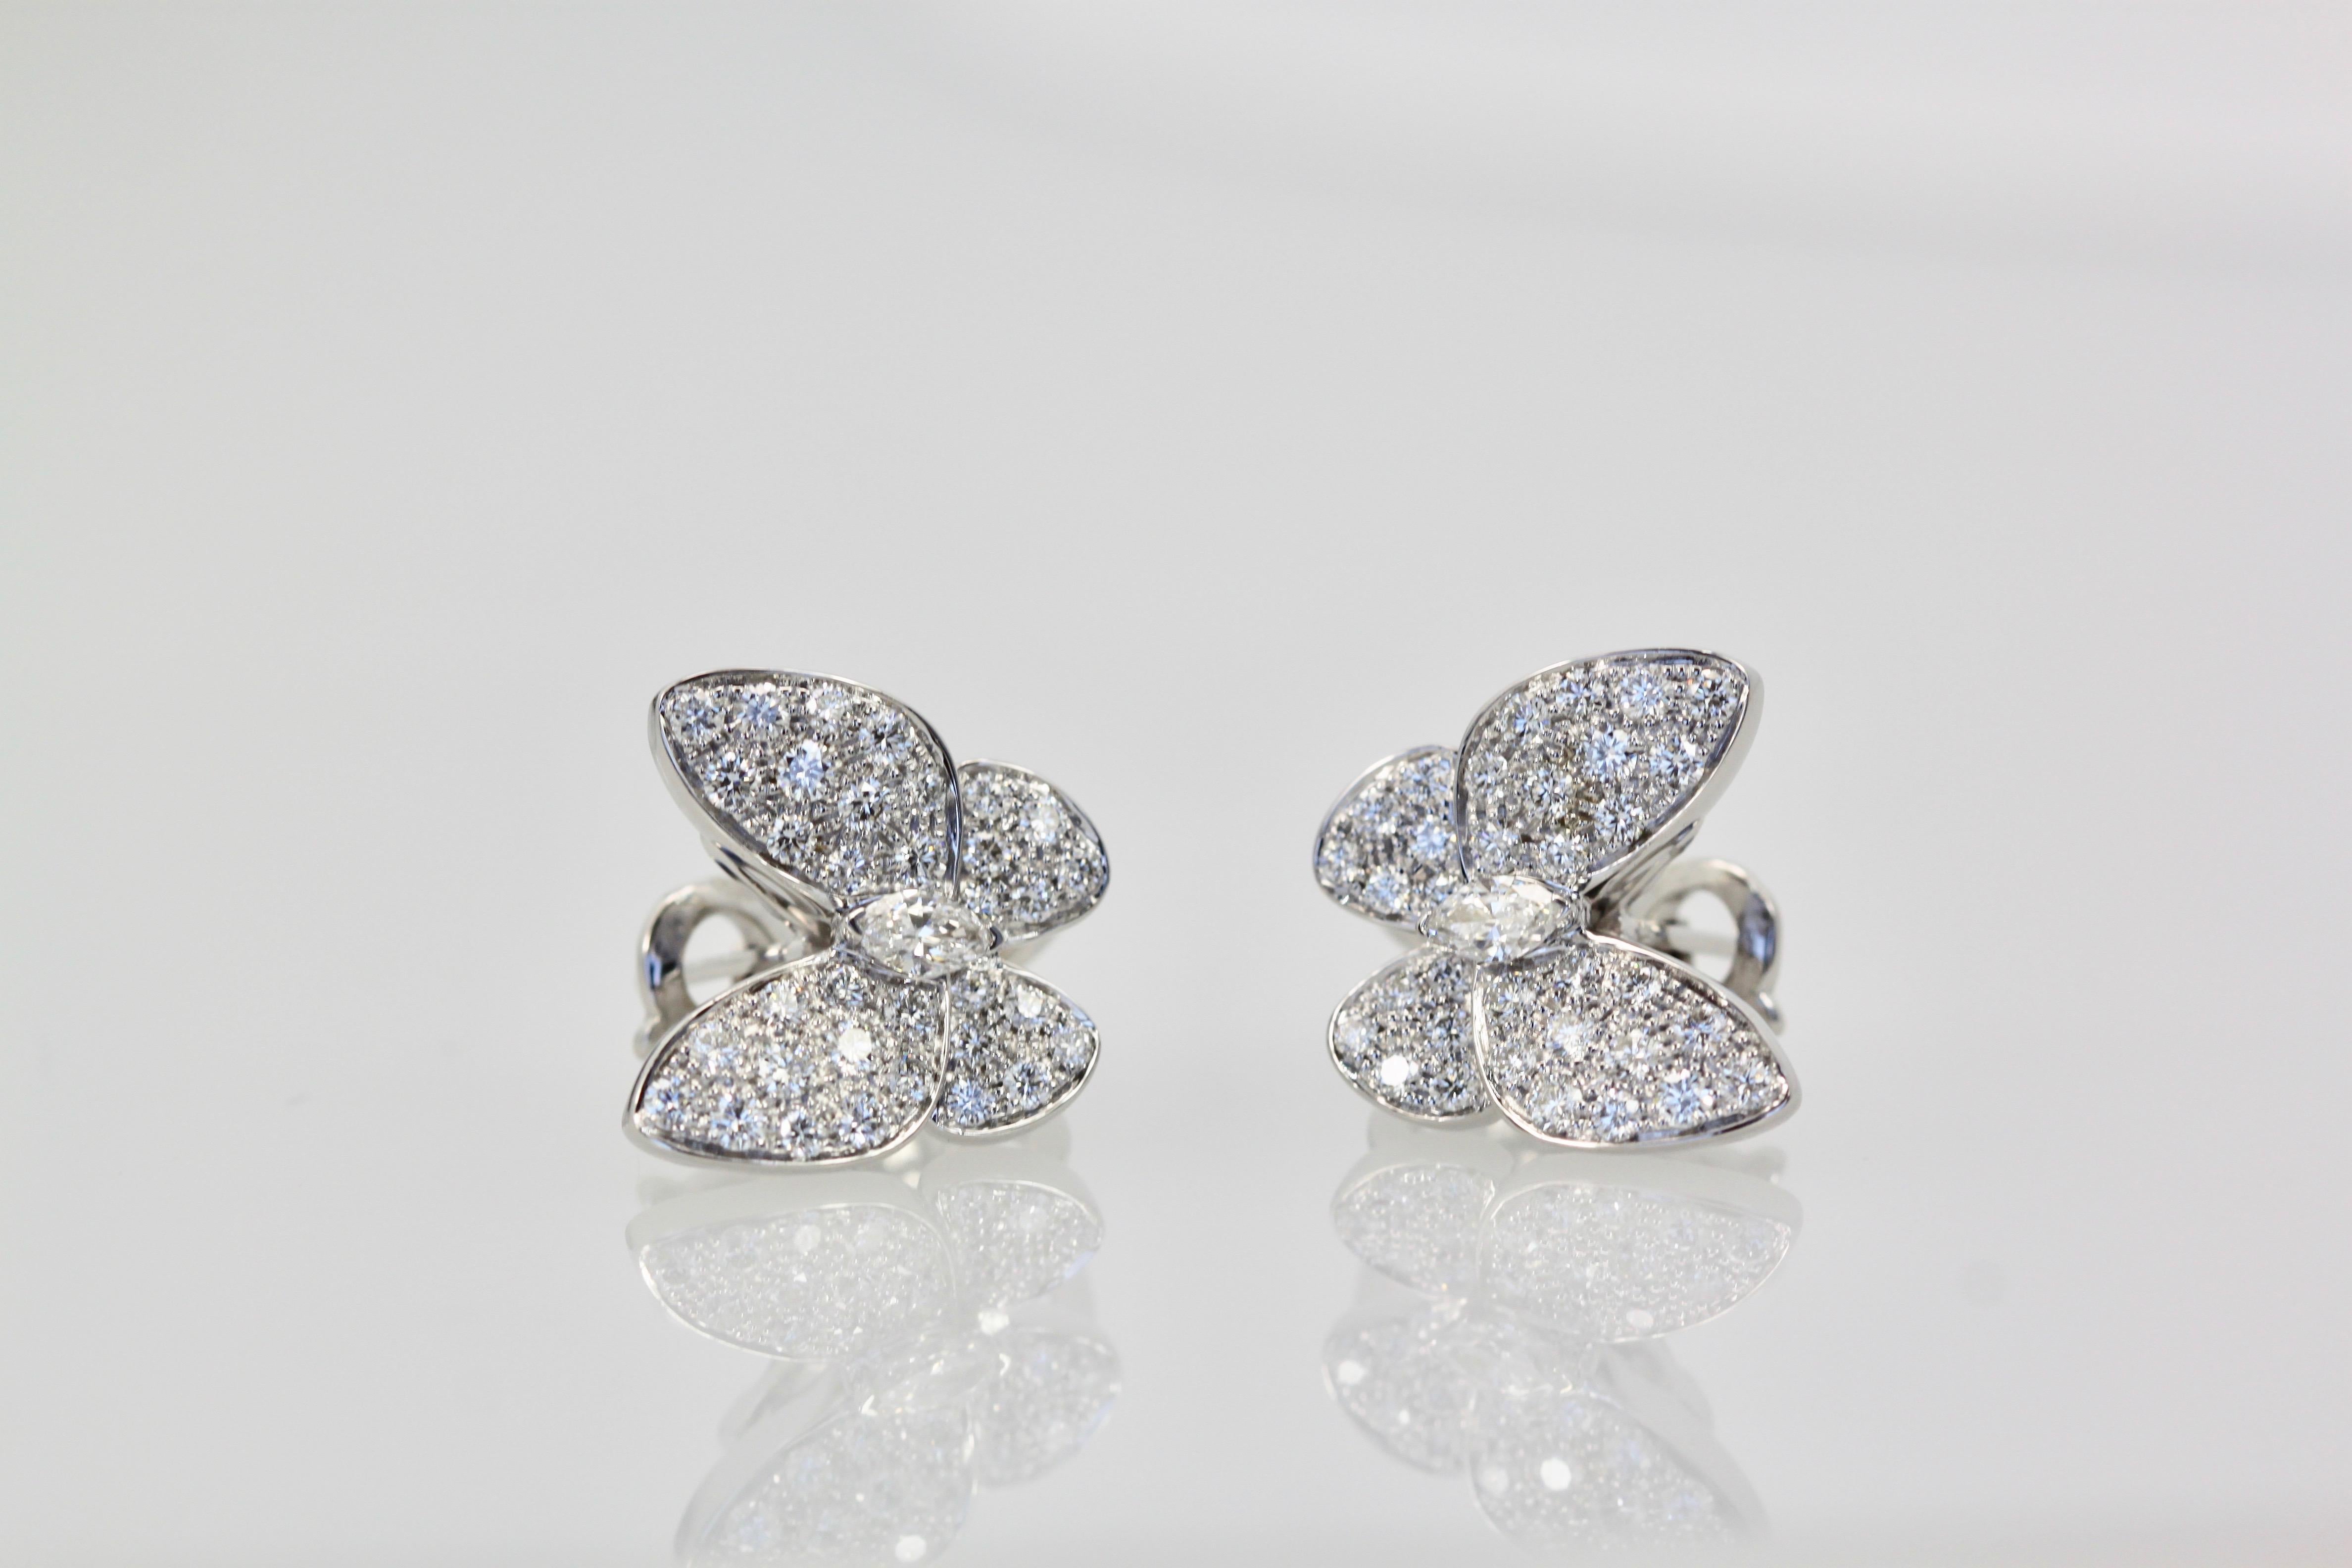 Van Cleef & Arpels Weißer Diamant Schmetterling Ohrringe 18 Karat Weißgold (Ästhetizismus)